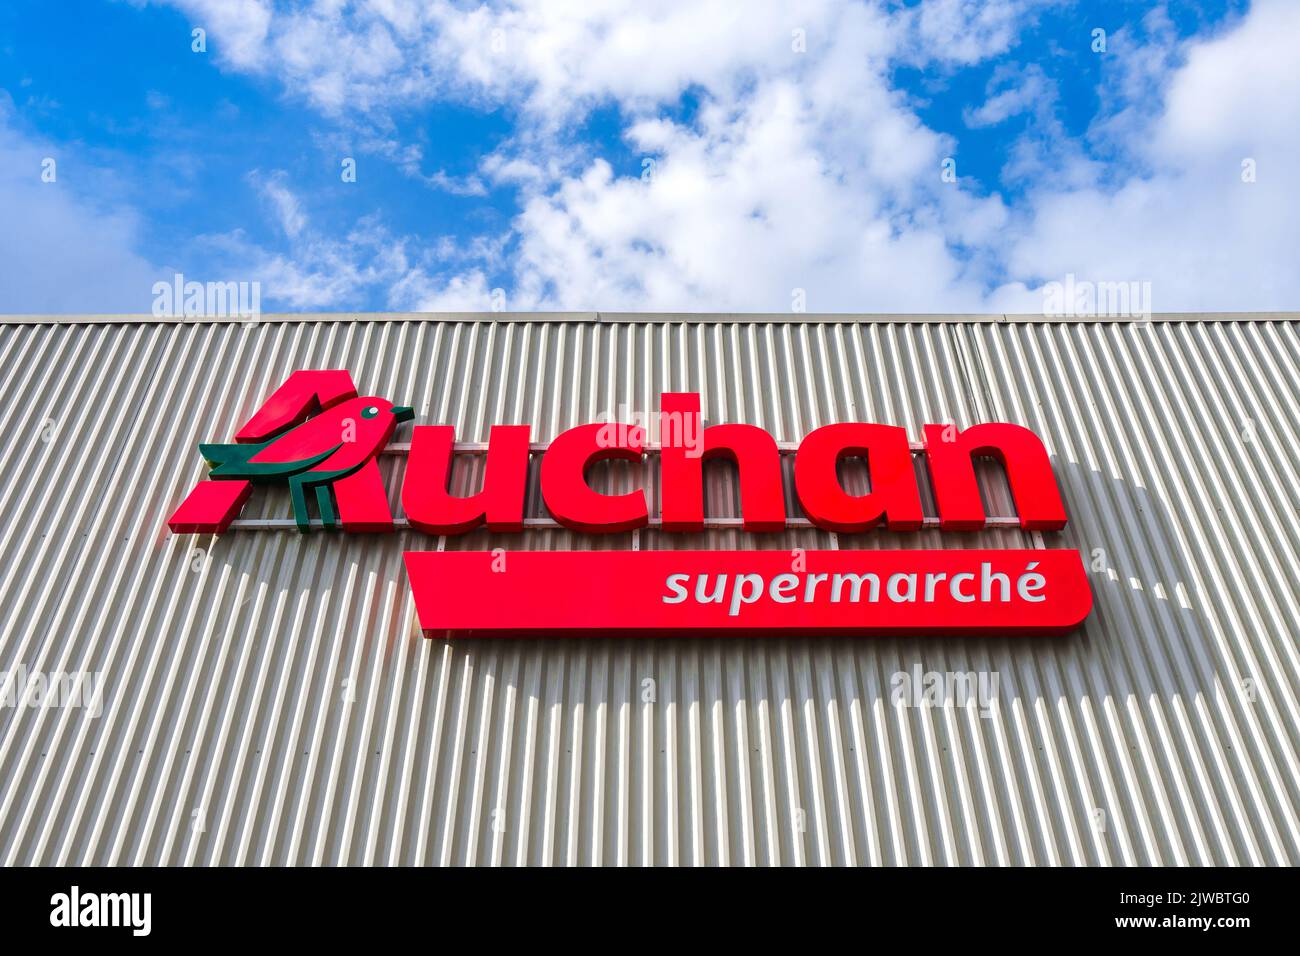 Nombre y logotipo del supermercado francés Auchan reconocido internacionalmente - Ligueil, Indre-et-Loire (37), Francia. Foto de stock